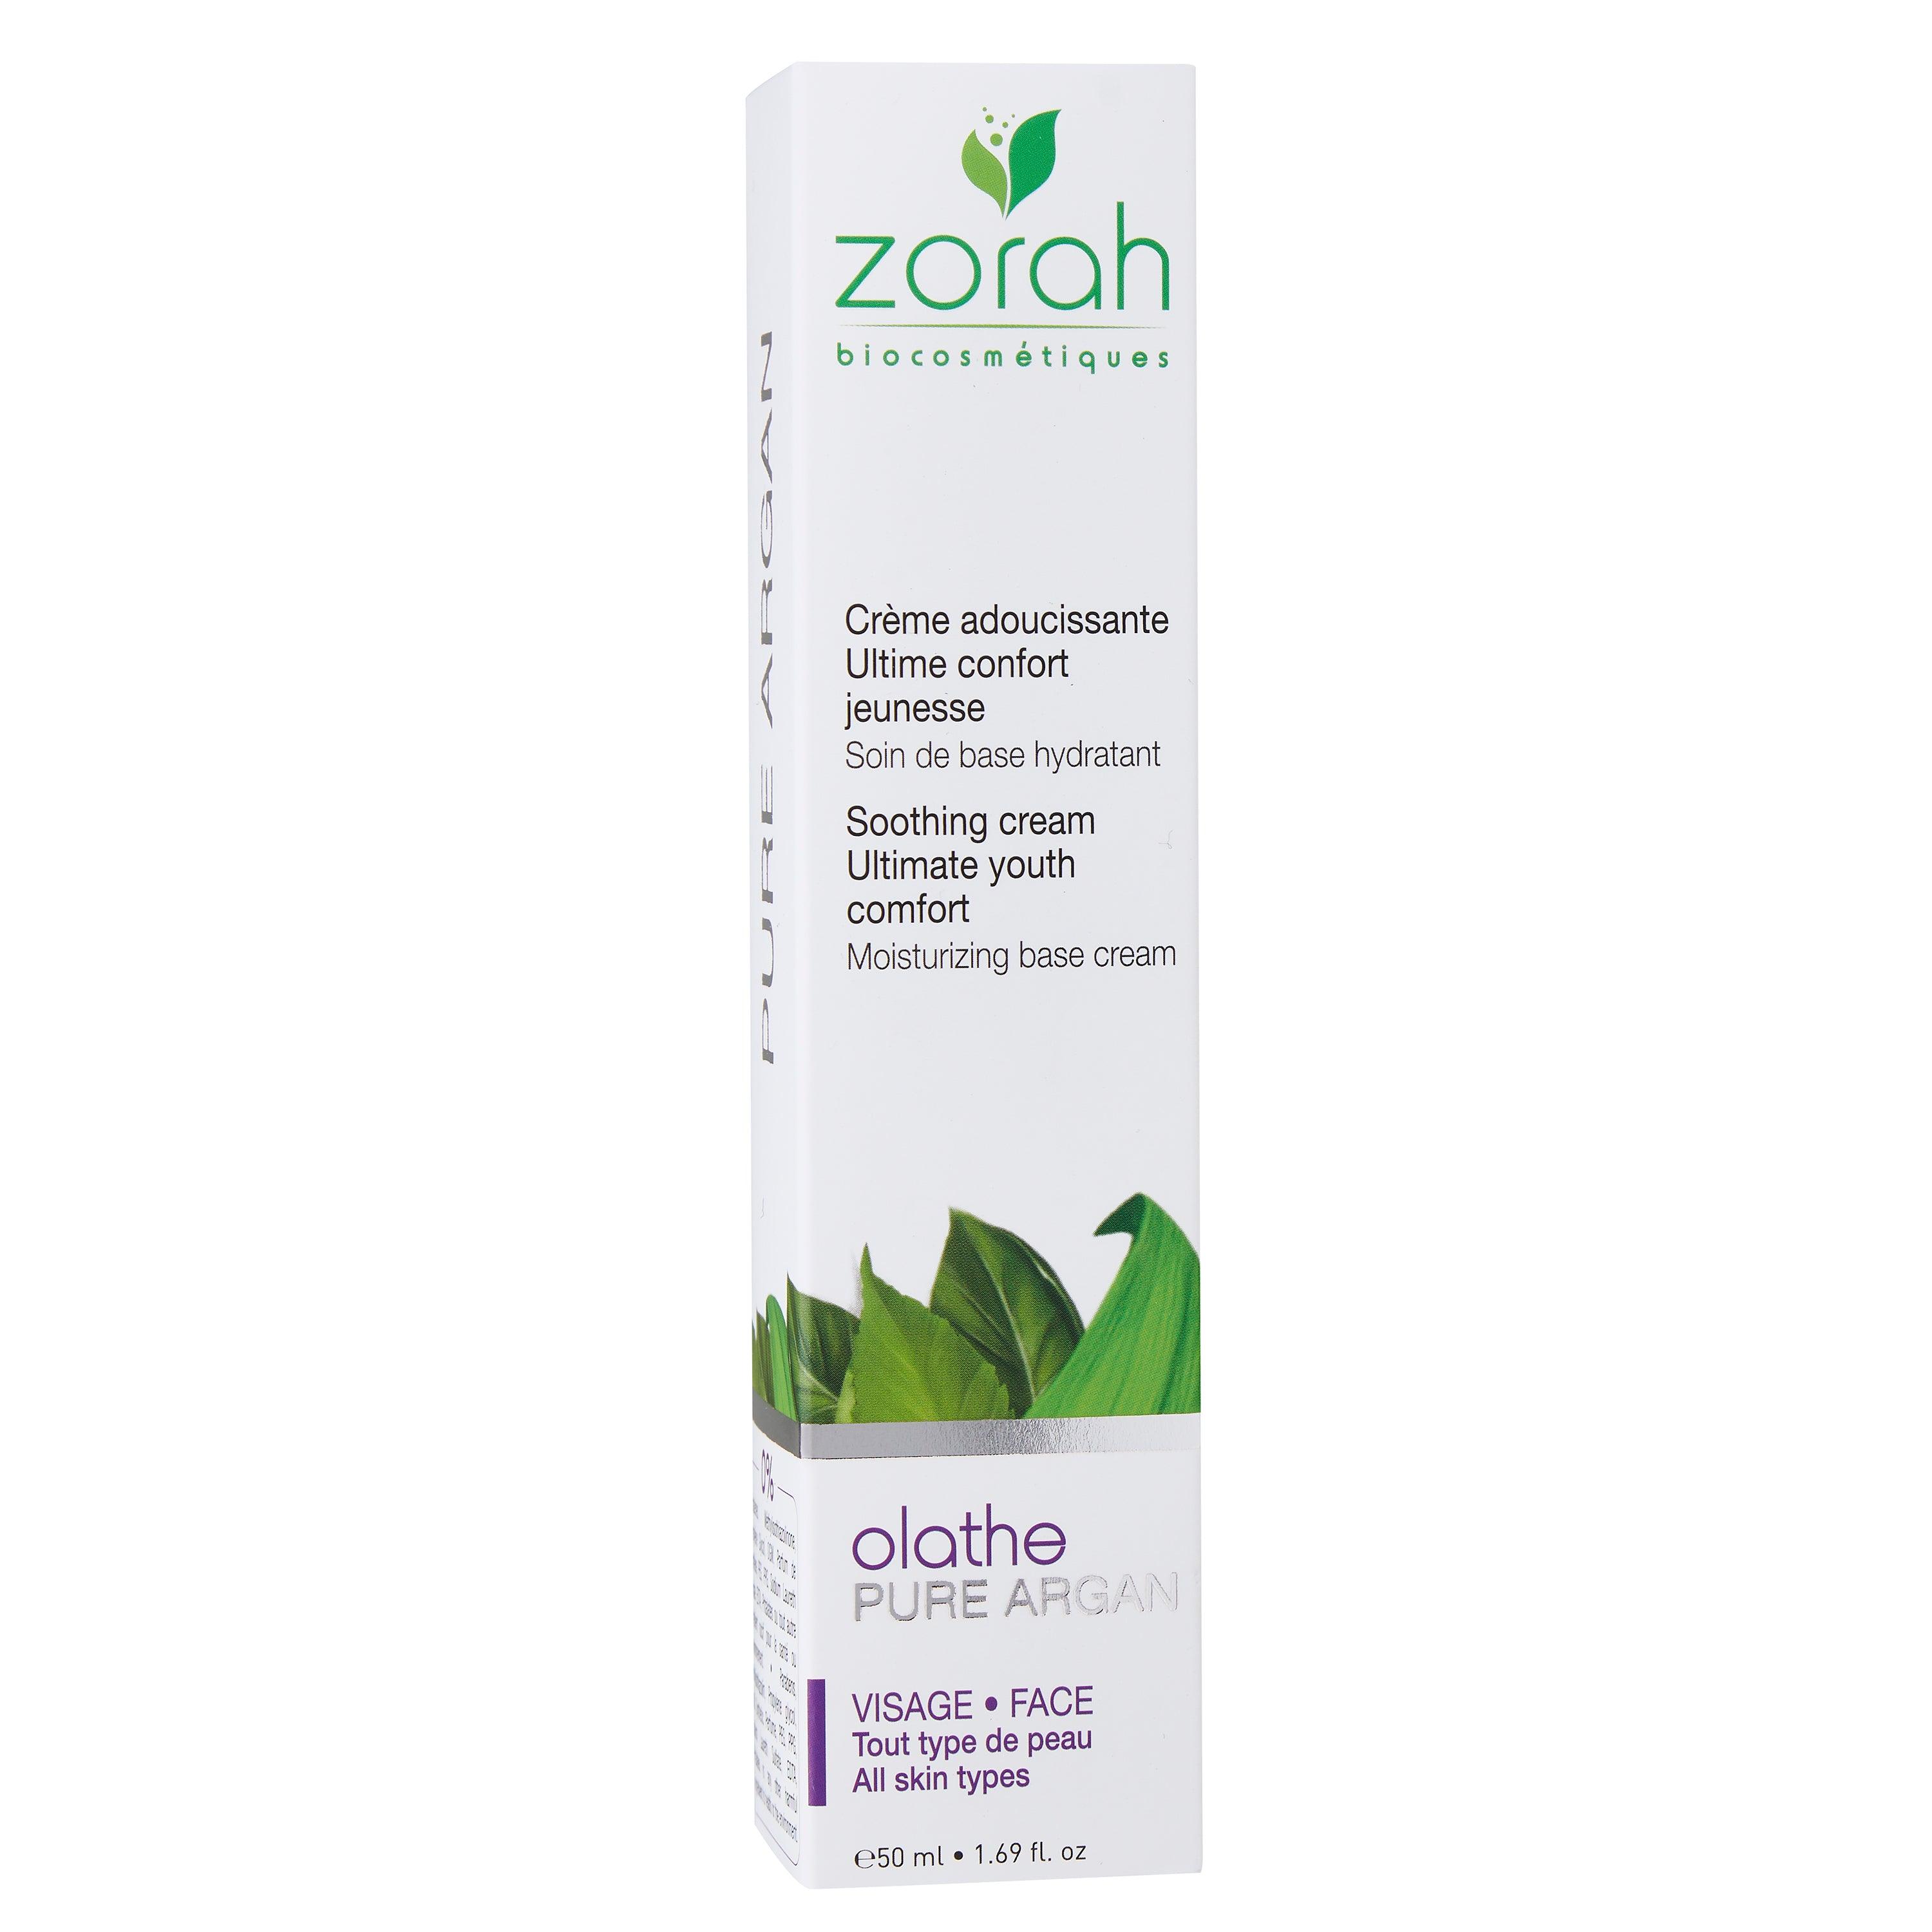 olathe | light moisturizing cream - Zorah biocosmétiques